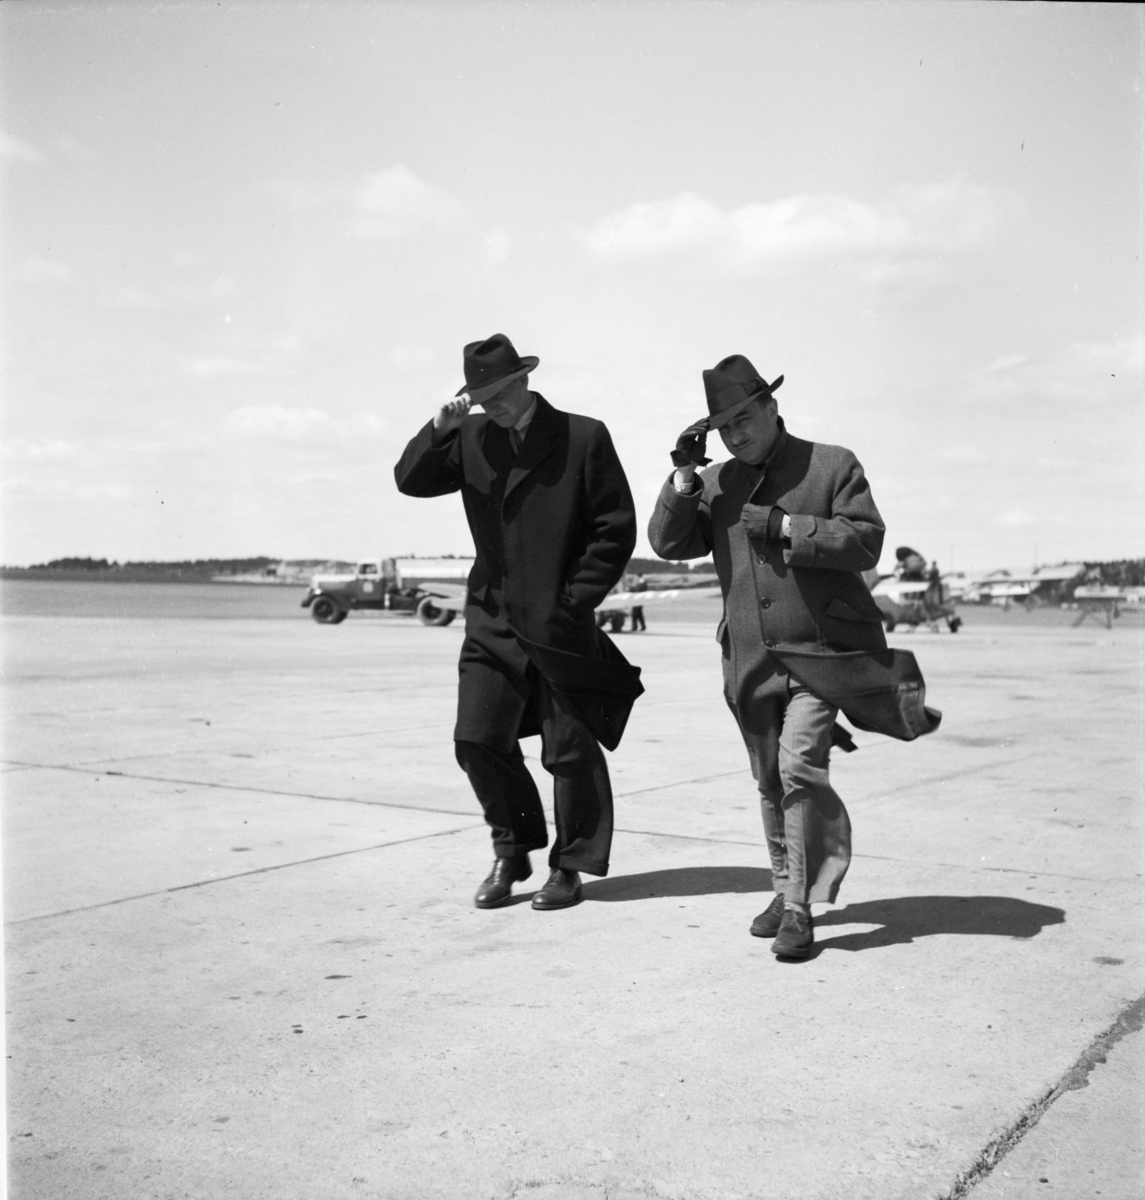 Herrkläder
Två män i hatt i motvind på en flygplats